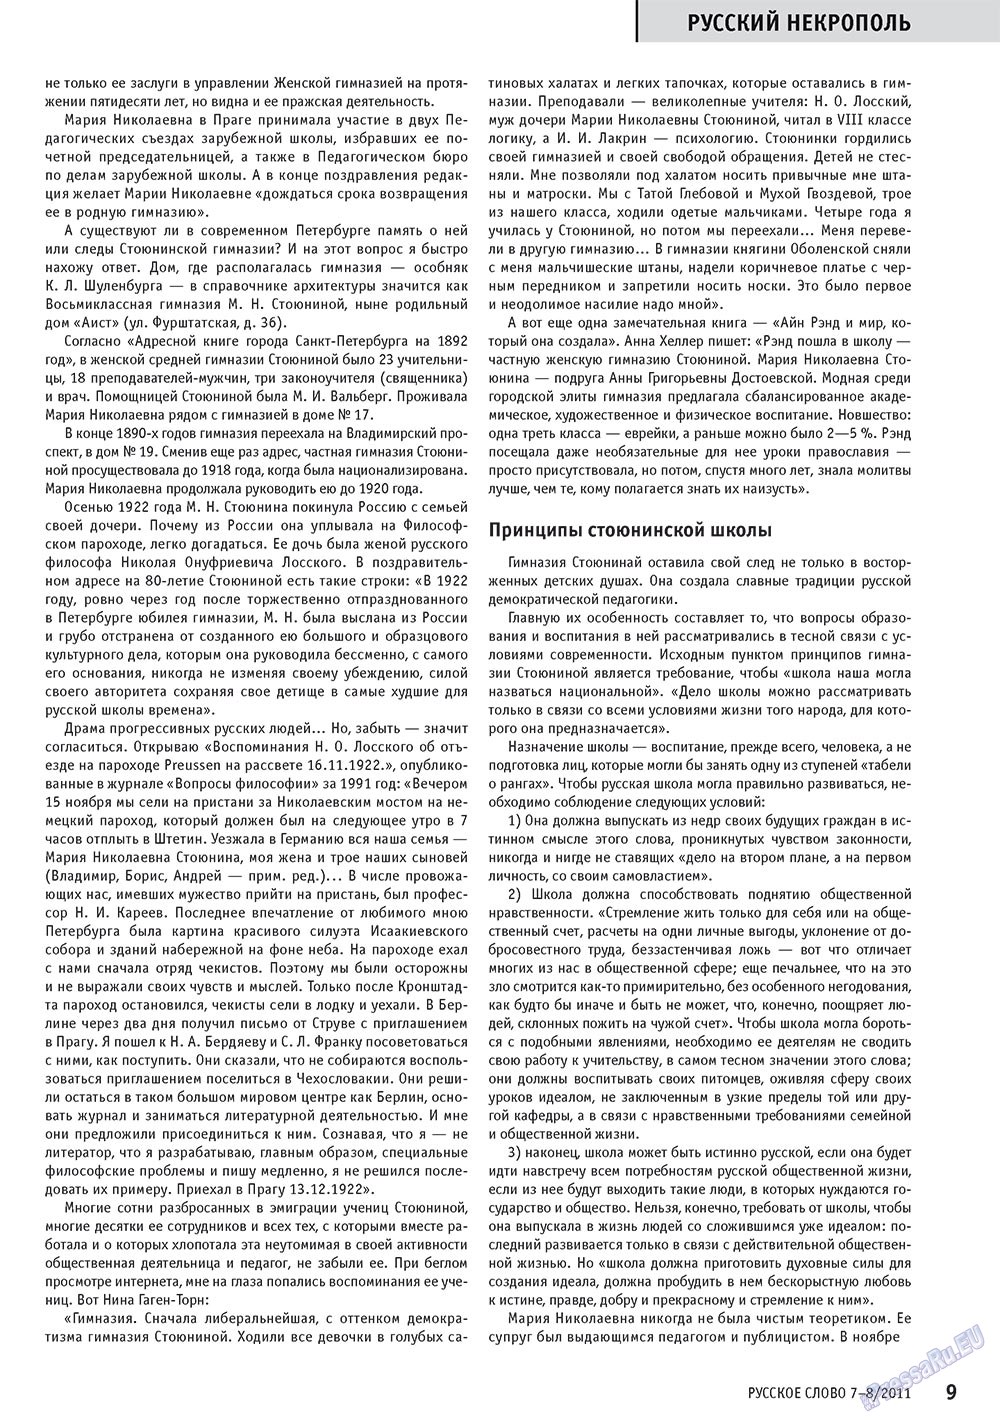 Русское слово, журнал. 2011 №7 стр.11